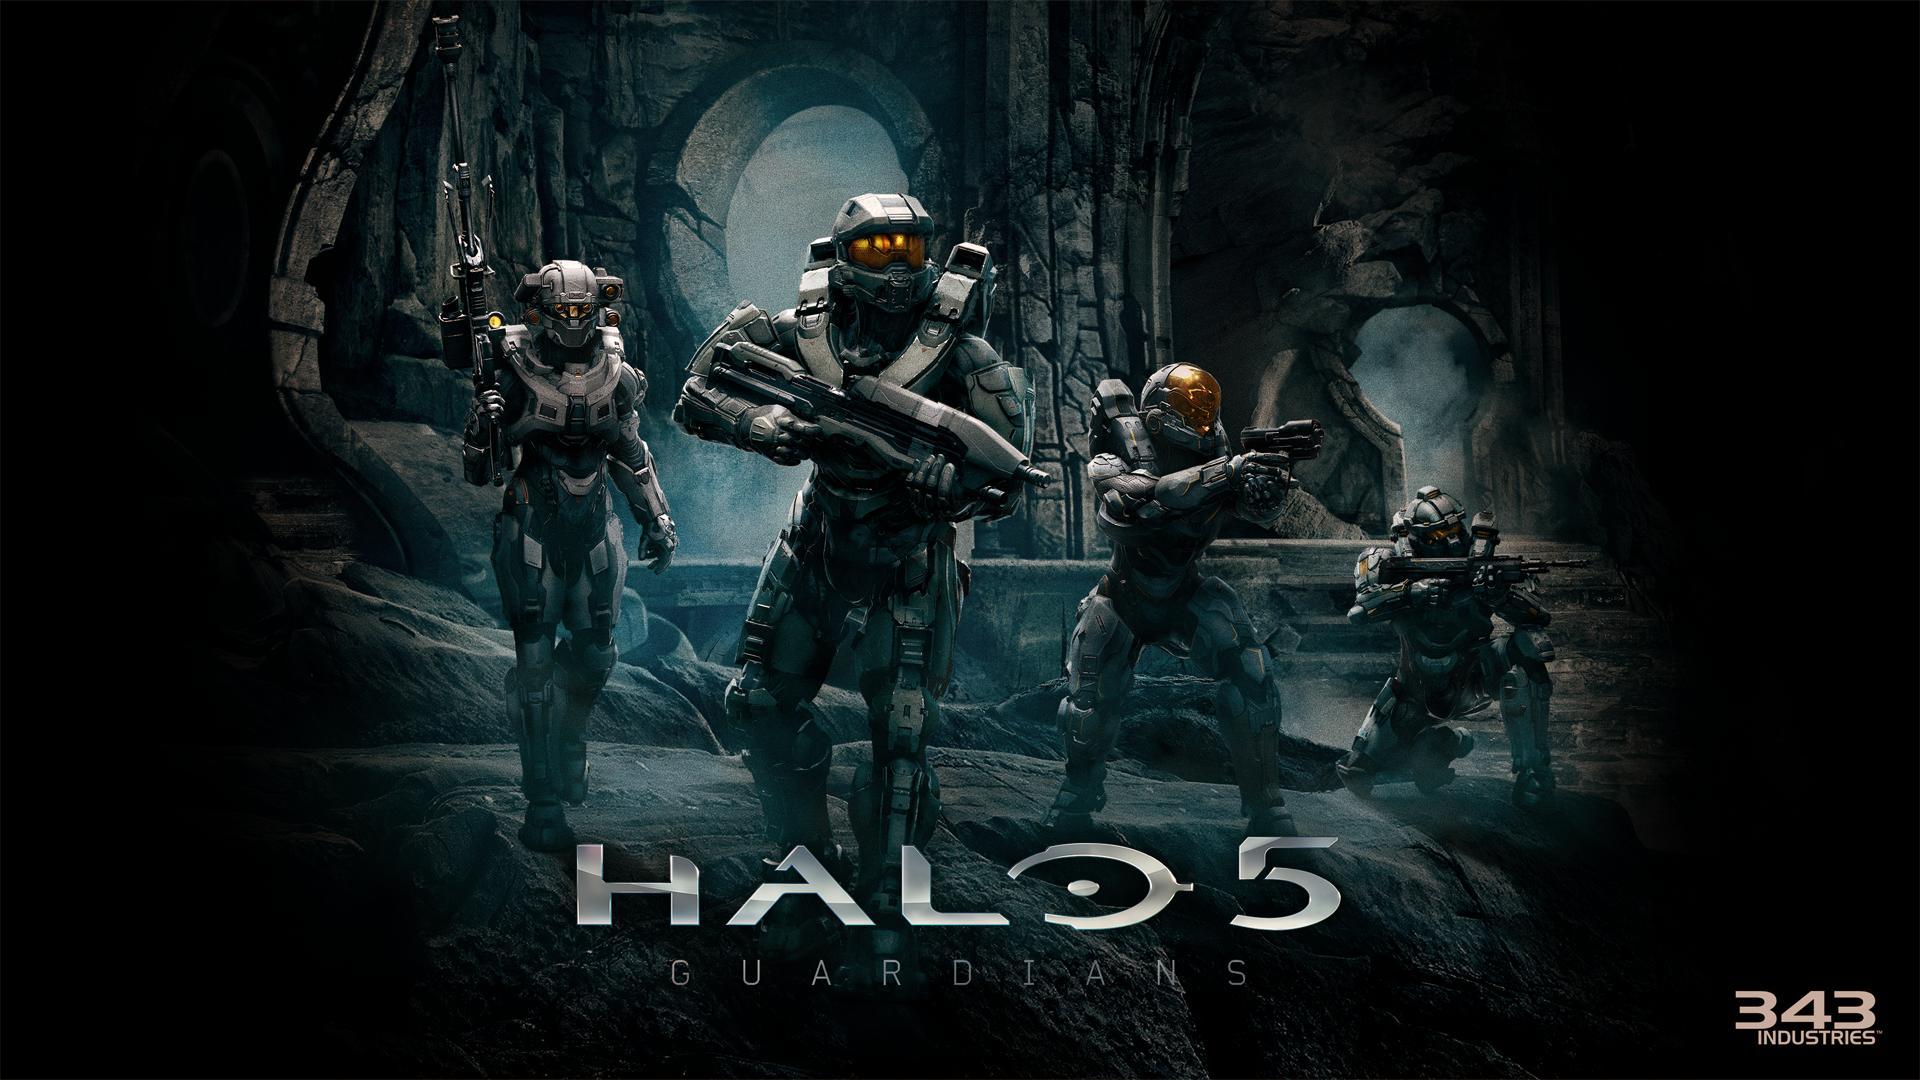 壁紙 ヘイロー 兵 Halo 5 Guardians Master Chief Spartan Blue Team ゲーム ファンタジー ダウンロード 写真